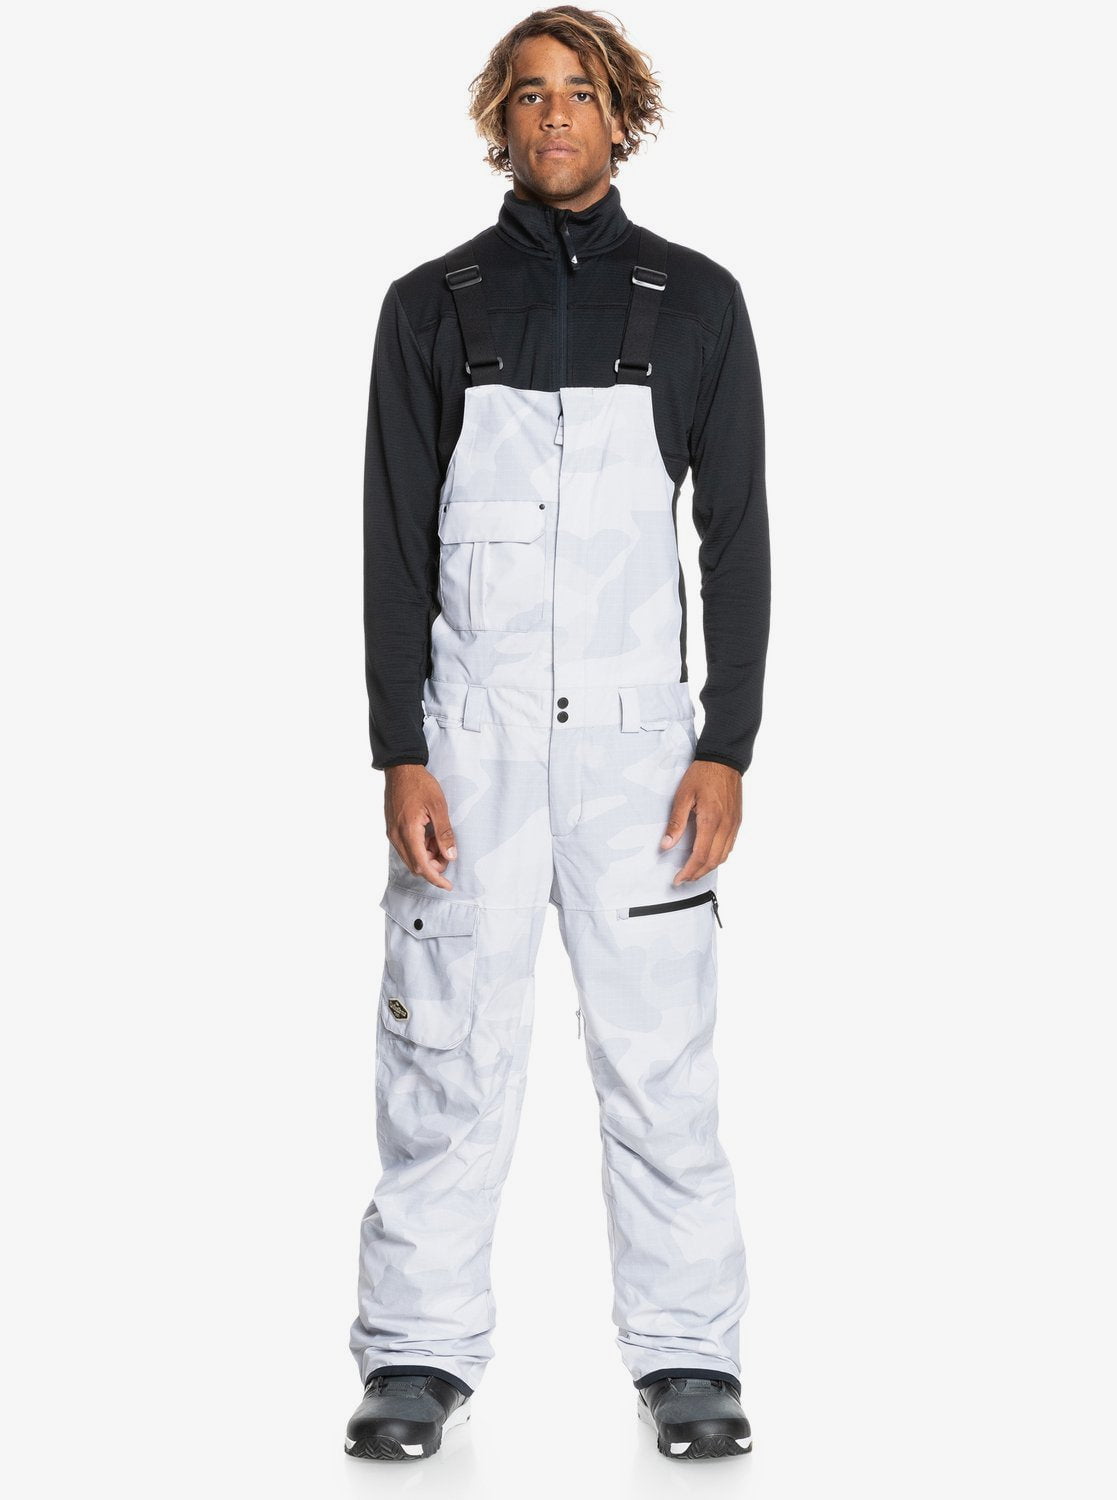 Quiksilver Mens Utility Technical Snow Bib Pants - Pale Khaki | SurfStitch